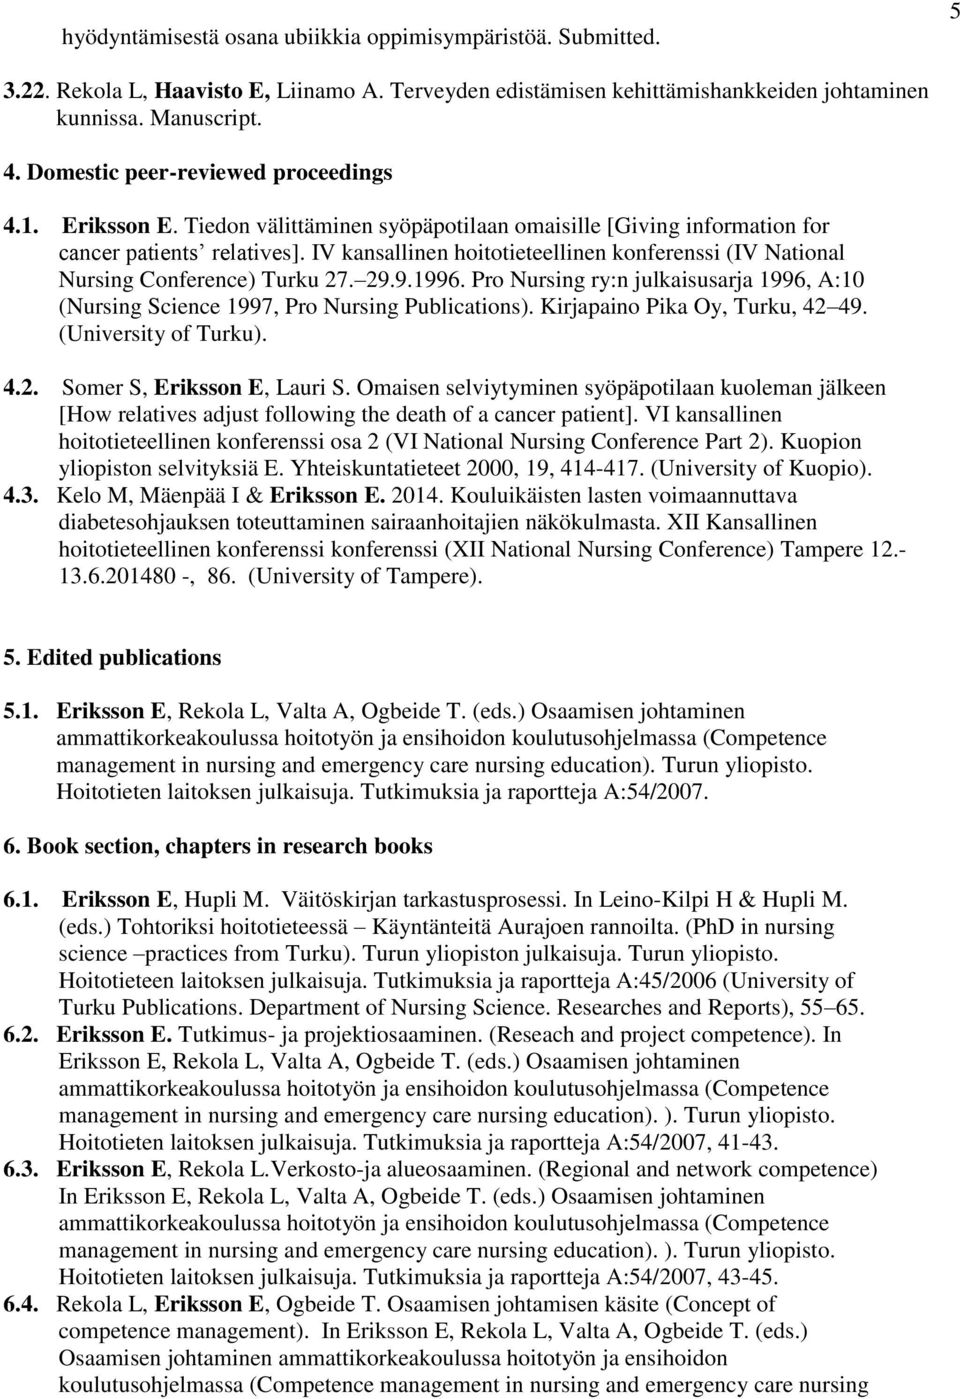 IV kansallinen hoitotieteellinen konferenssi (IV National Nursing Conference) Turku 27. 29.9.1996. Pro Nursing ry:n julkaisusarja 1996, A:10 (Nursing Science 1997, Pro Nursing Publications).